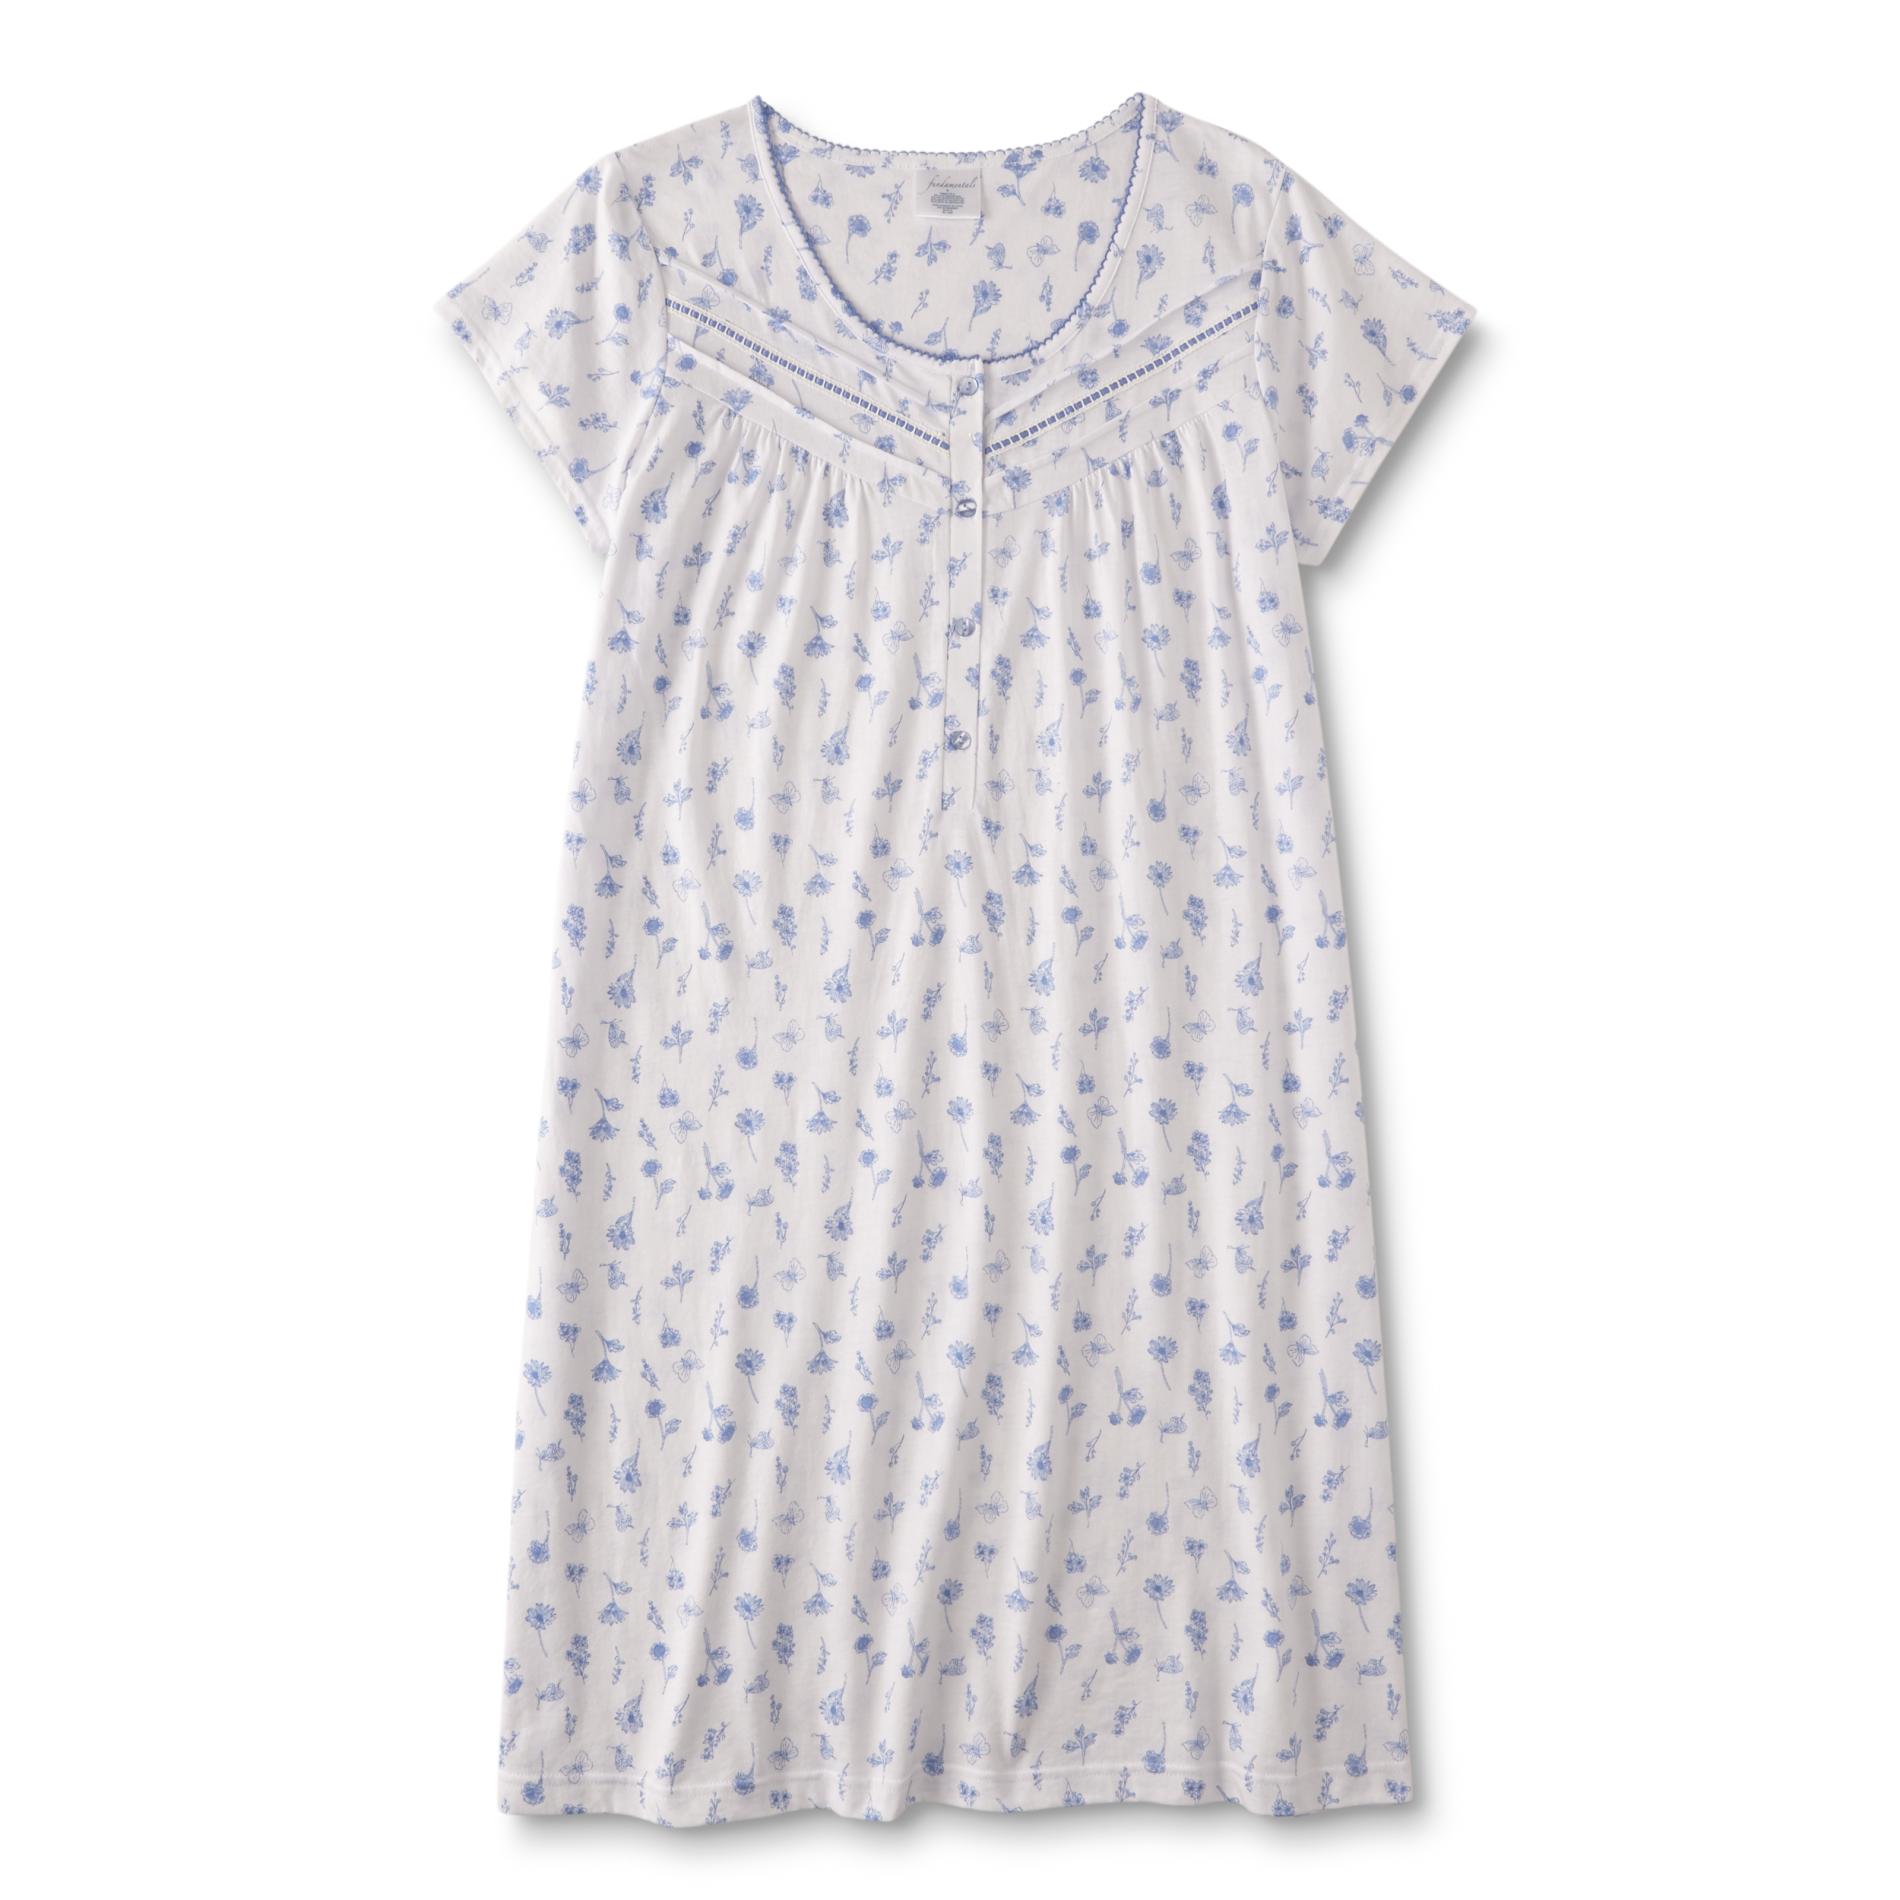 Fundamentals Women's Short-Sleeve Nightgown - Floral Butterflies